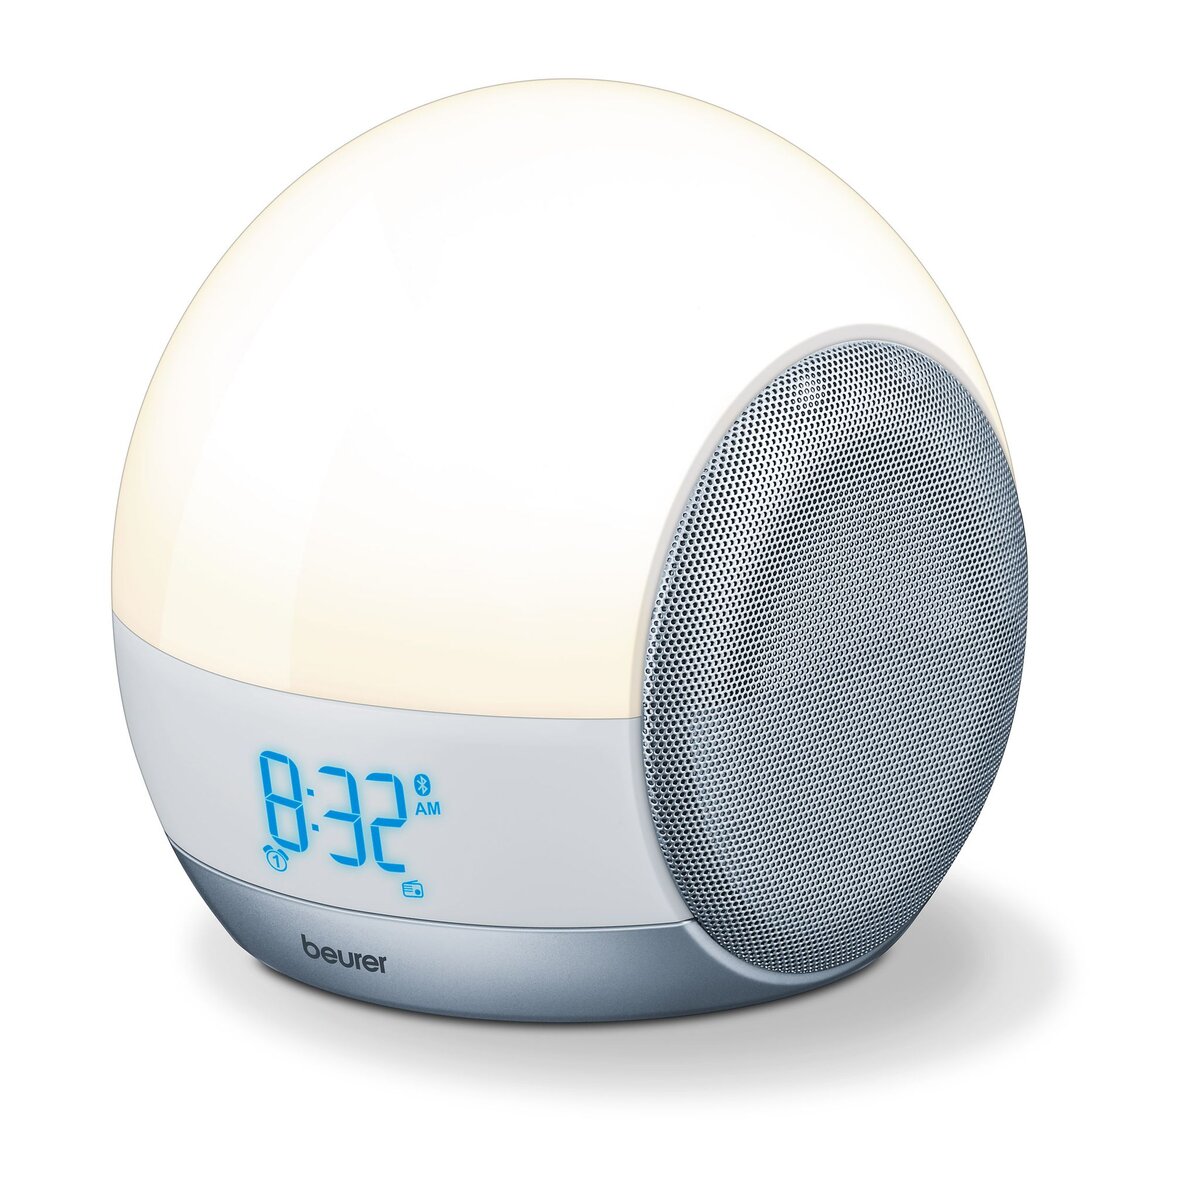 BEURER Radio-réveil lumineux 4 en 1 connecté Bluetooth WL 90 : simulation colorée du lever et du coucher du soleil avec signal sonore, radio et 10 mélodies de réveil